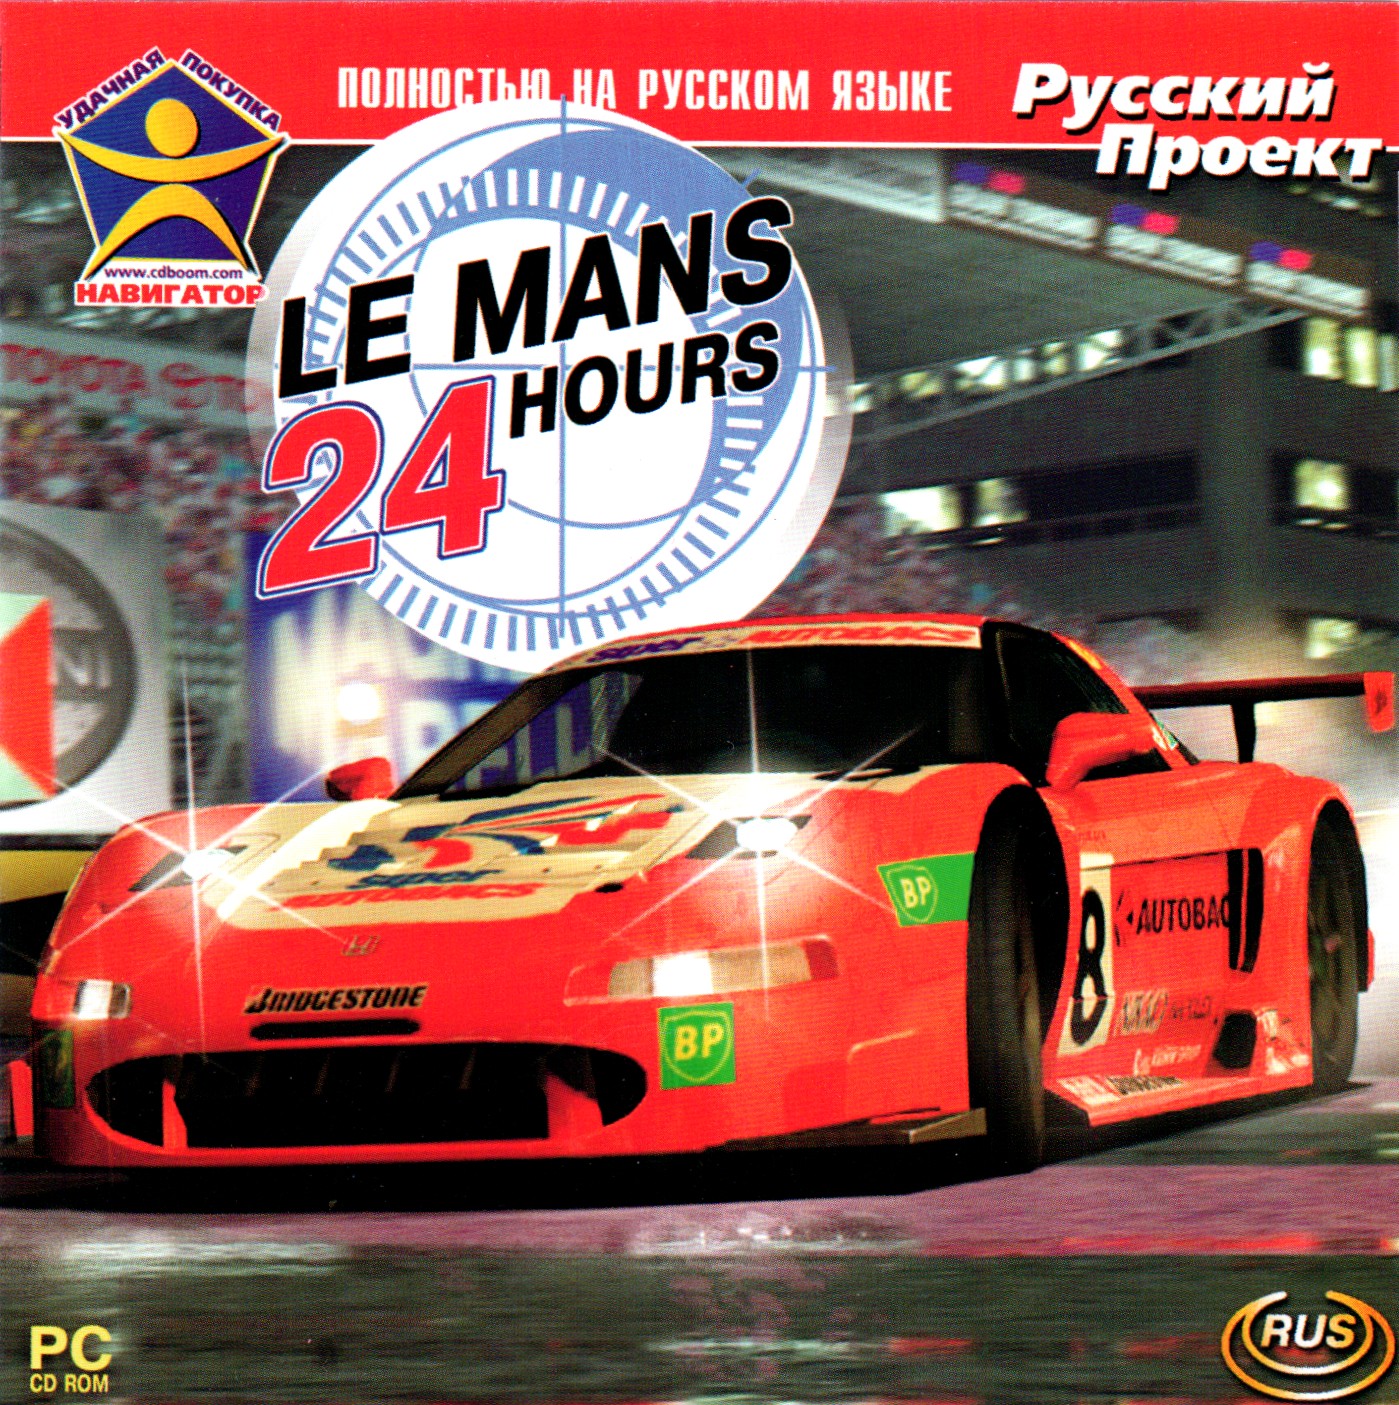 24 hours game. Lemans 24 hours / Ле-ман 24 часа Rus (2002). 24 Часа Ле-Мана игра на ПК. Ps1 обложка le mans 24 hours. Часы настенные гонки в Ле ман.